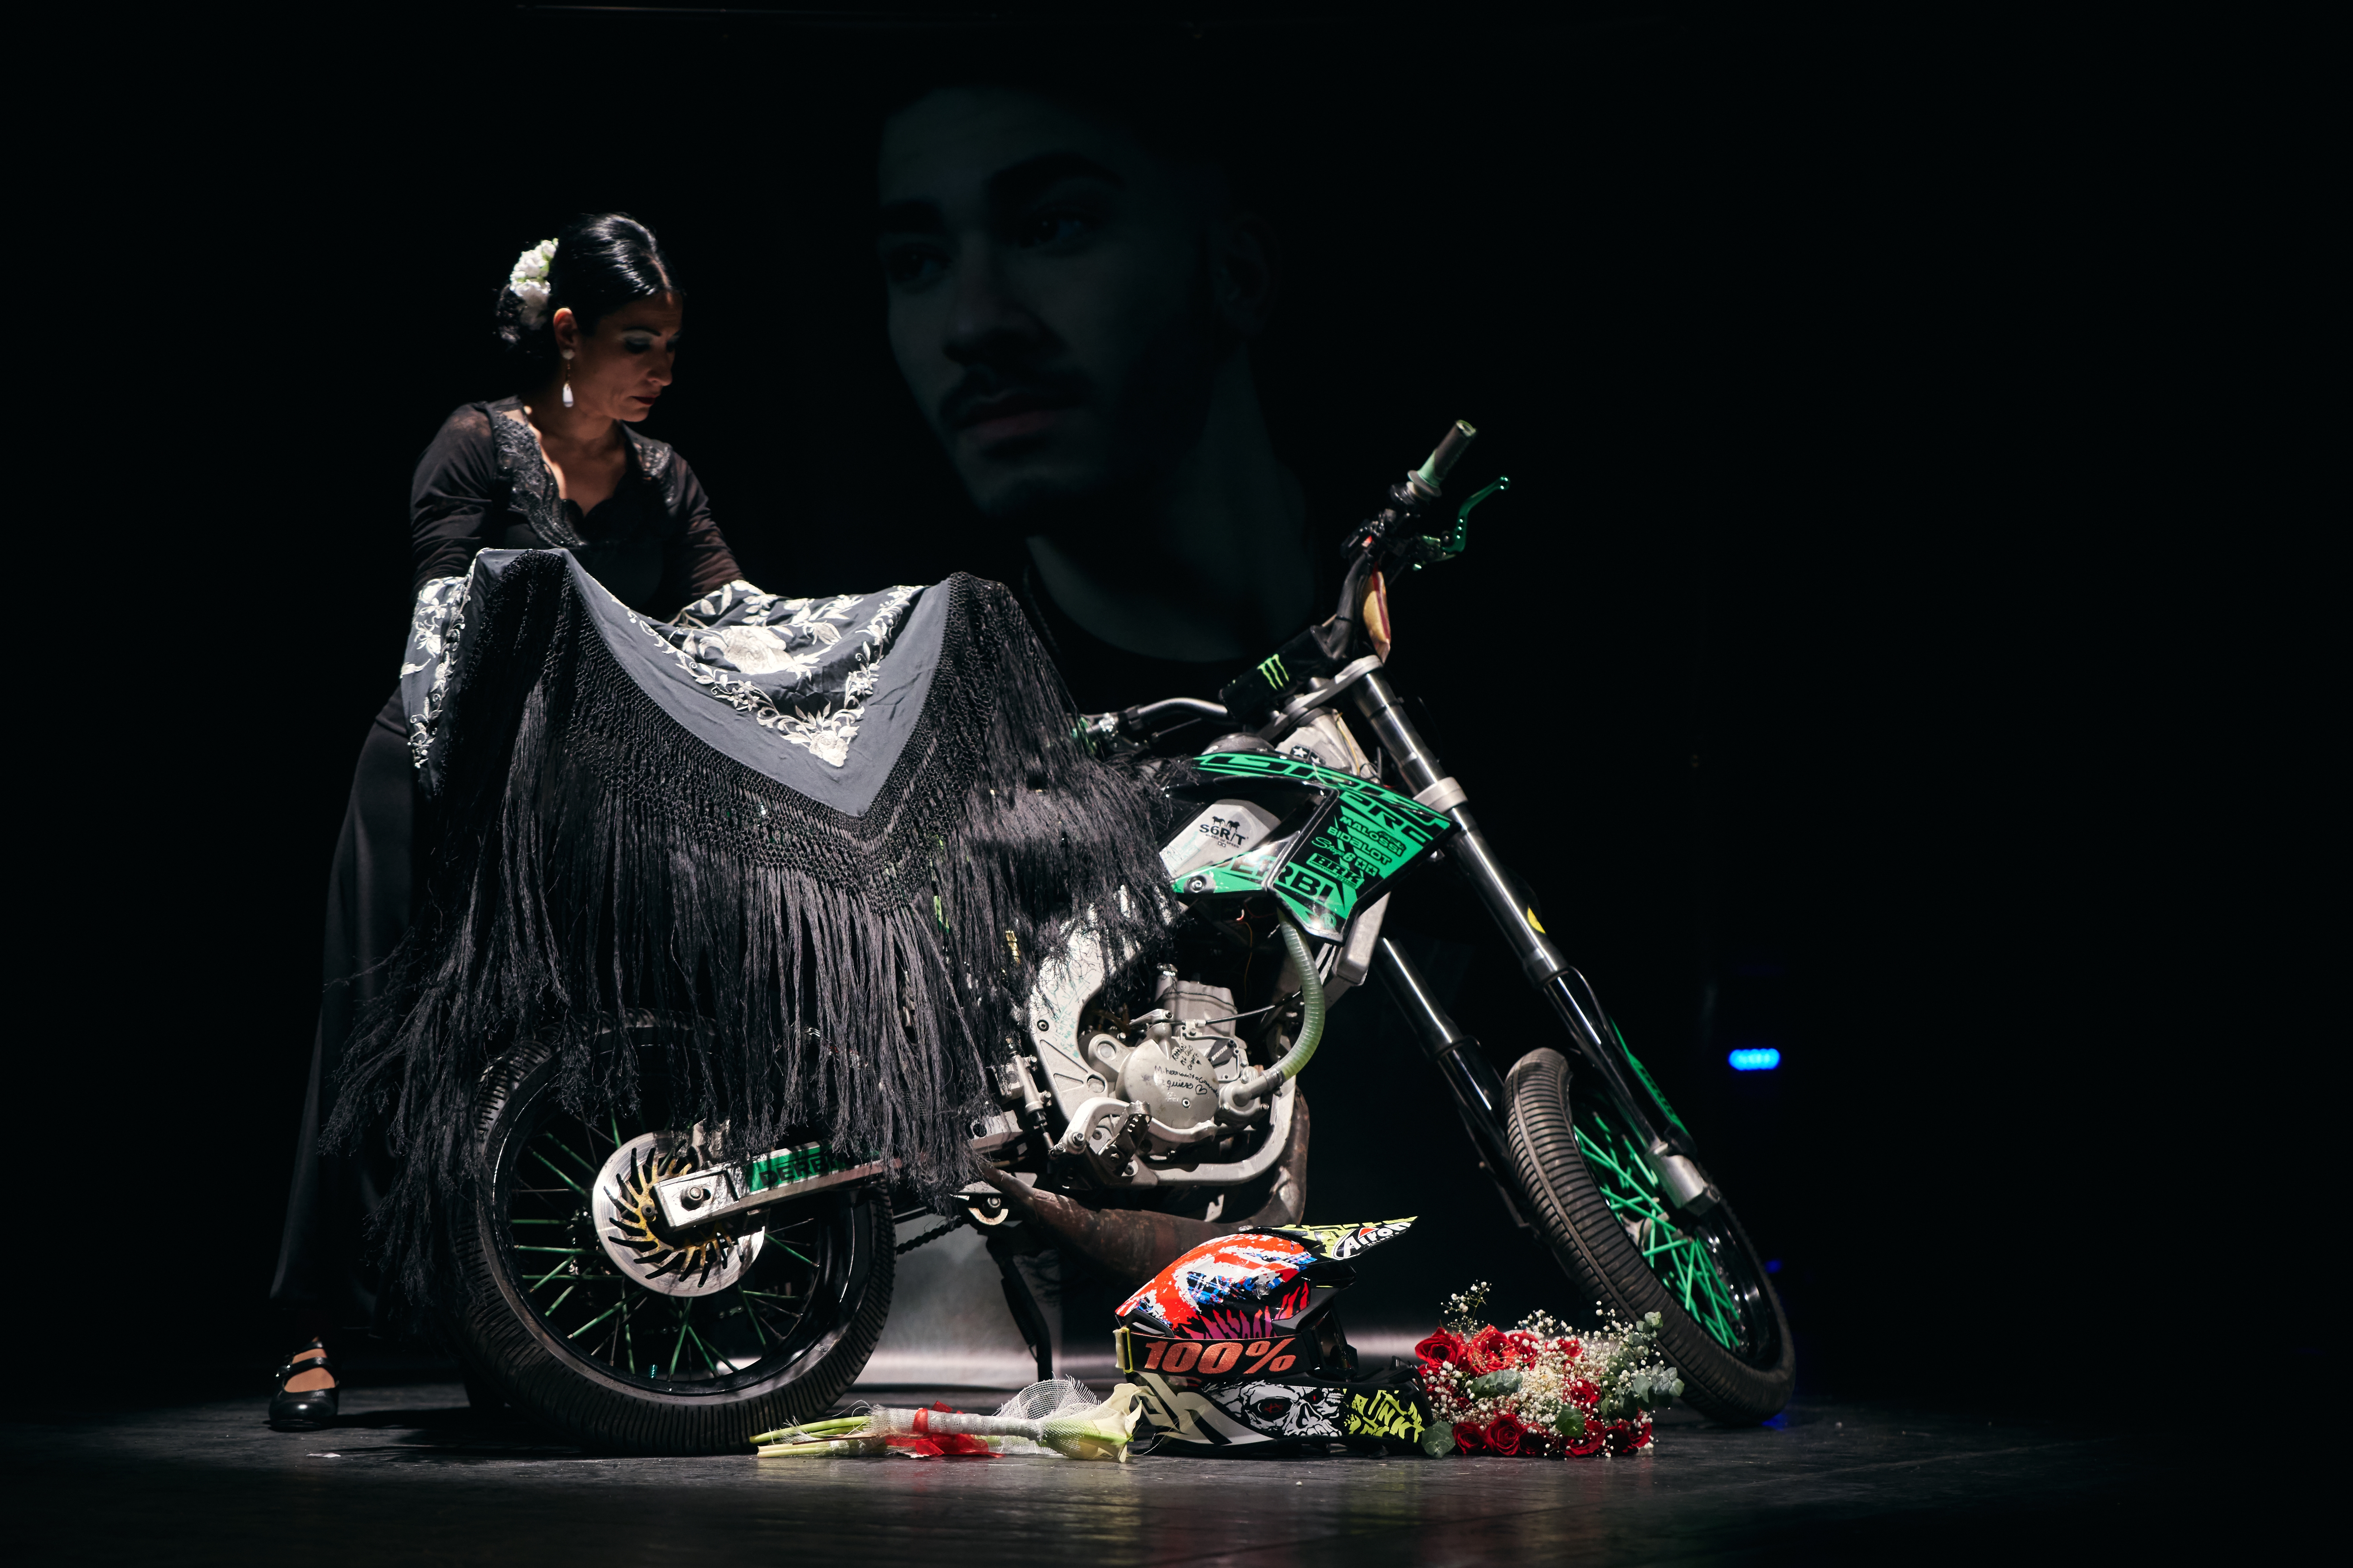 Noelia diposita la seva mantellina després de ballar al seient de la moto del seu fill